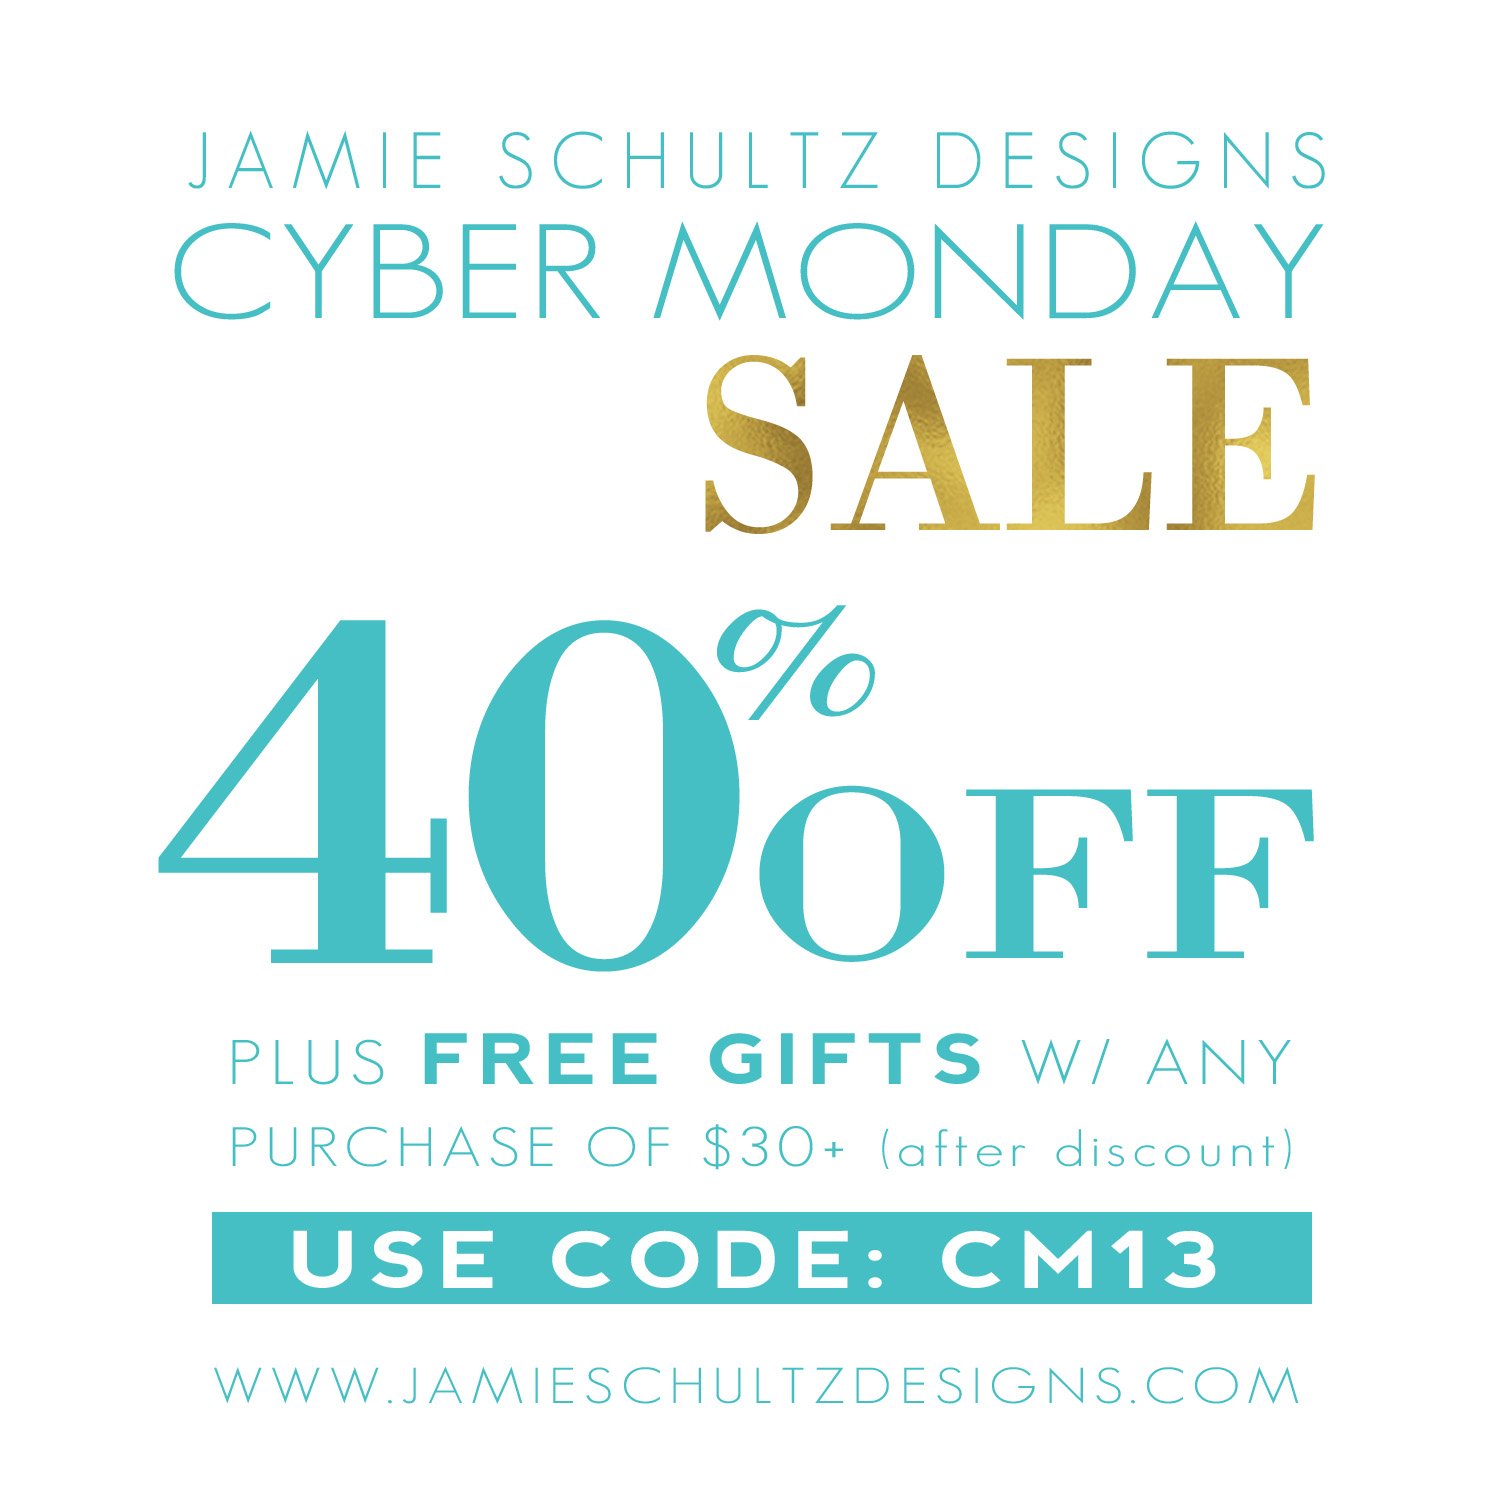 Cyber Monday at Jamie Schultz Designs